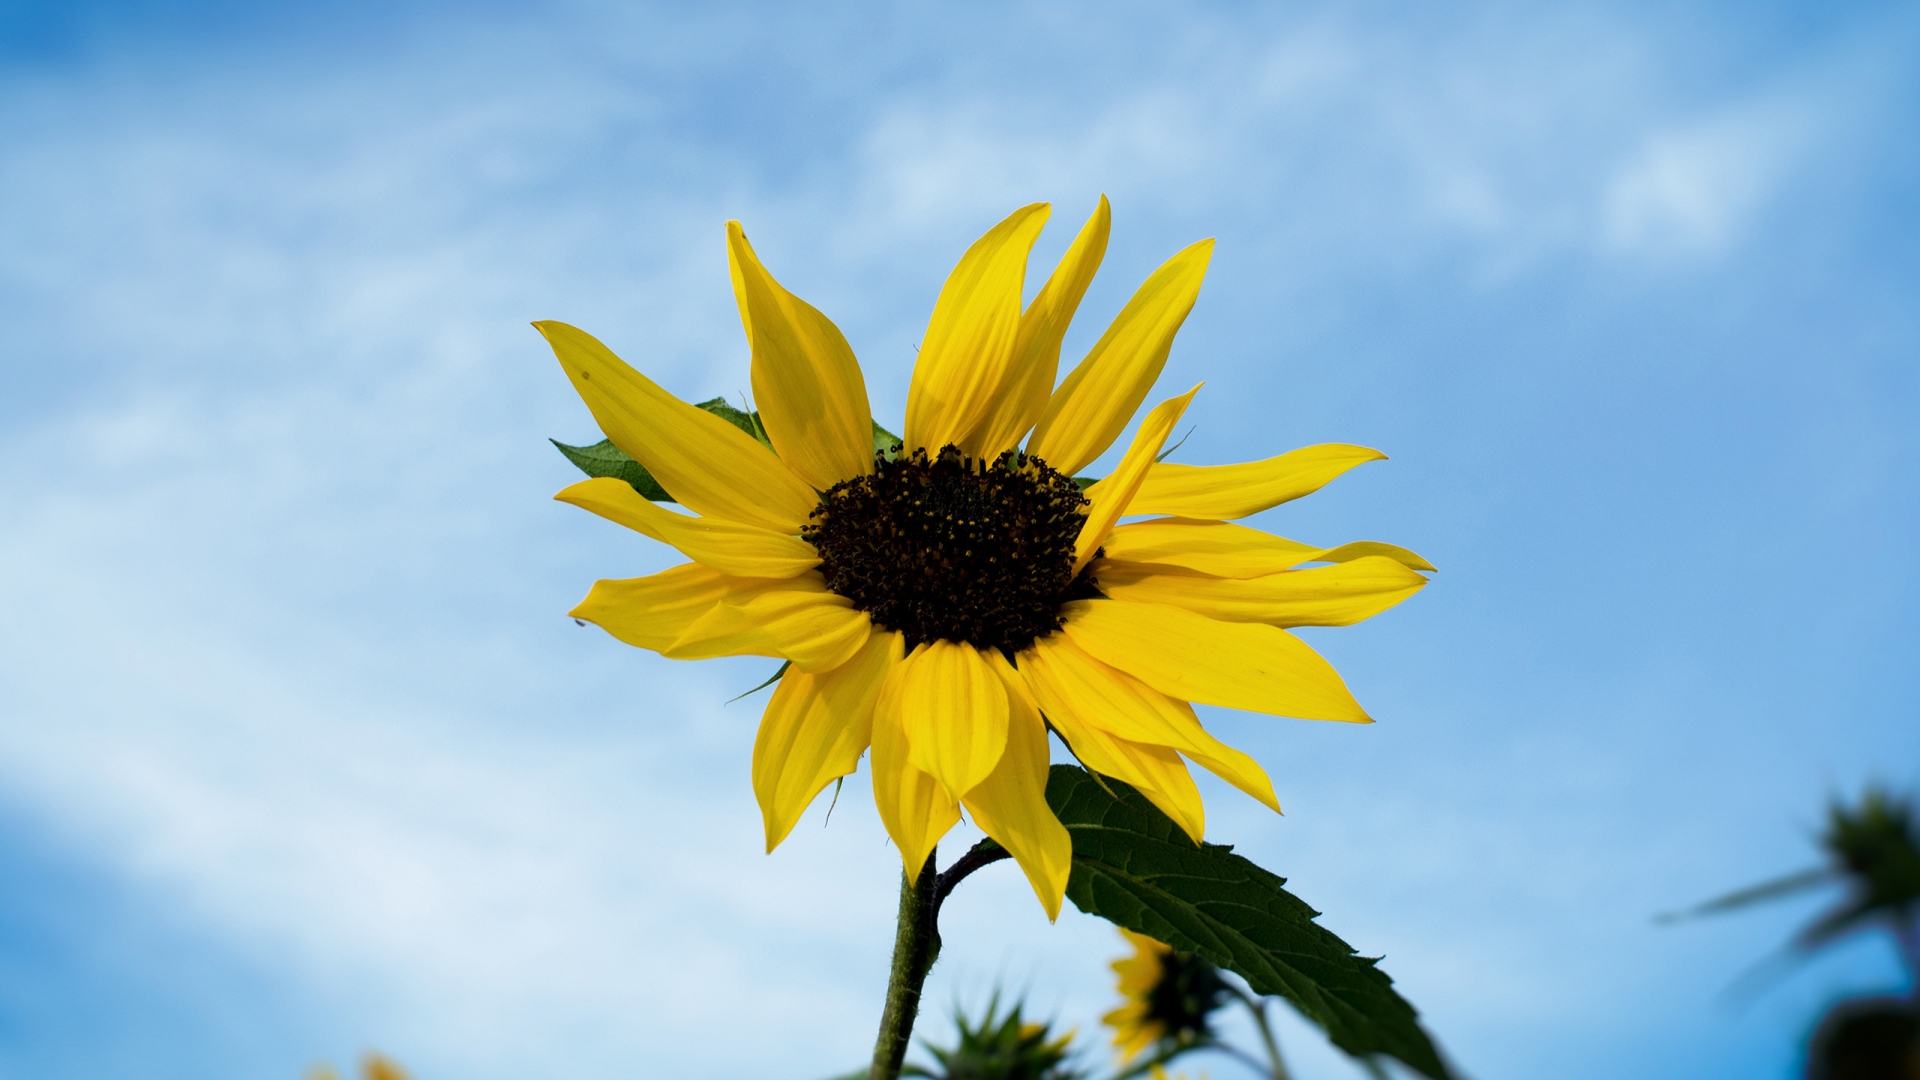 Single Sunflower for 1920 x 1080 HDTV 1080p resolution